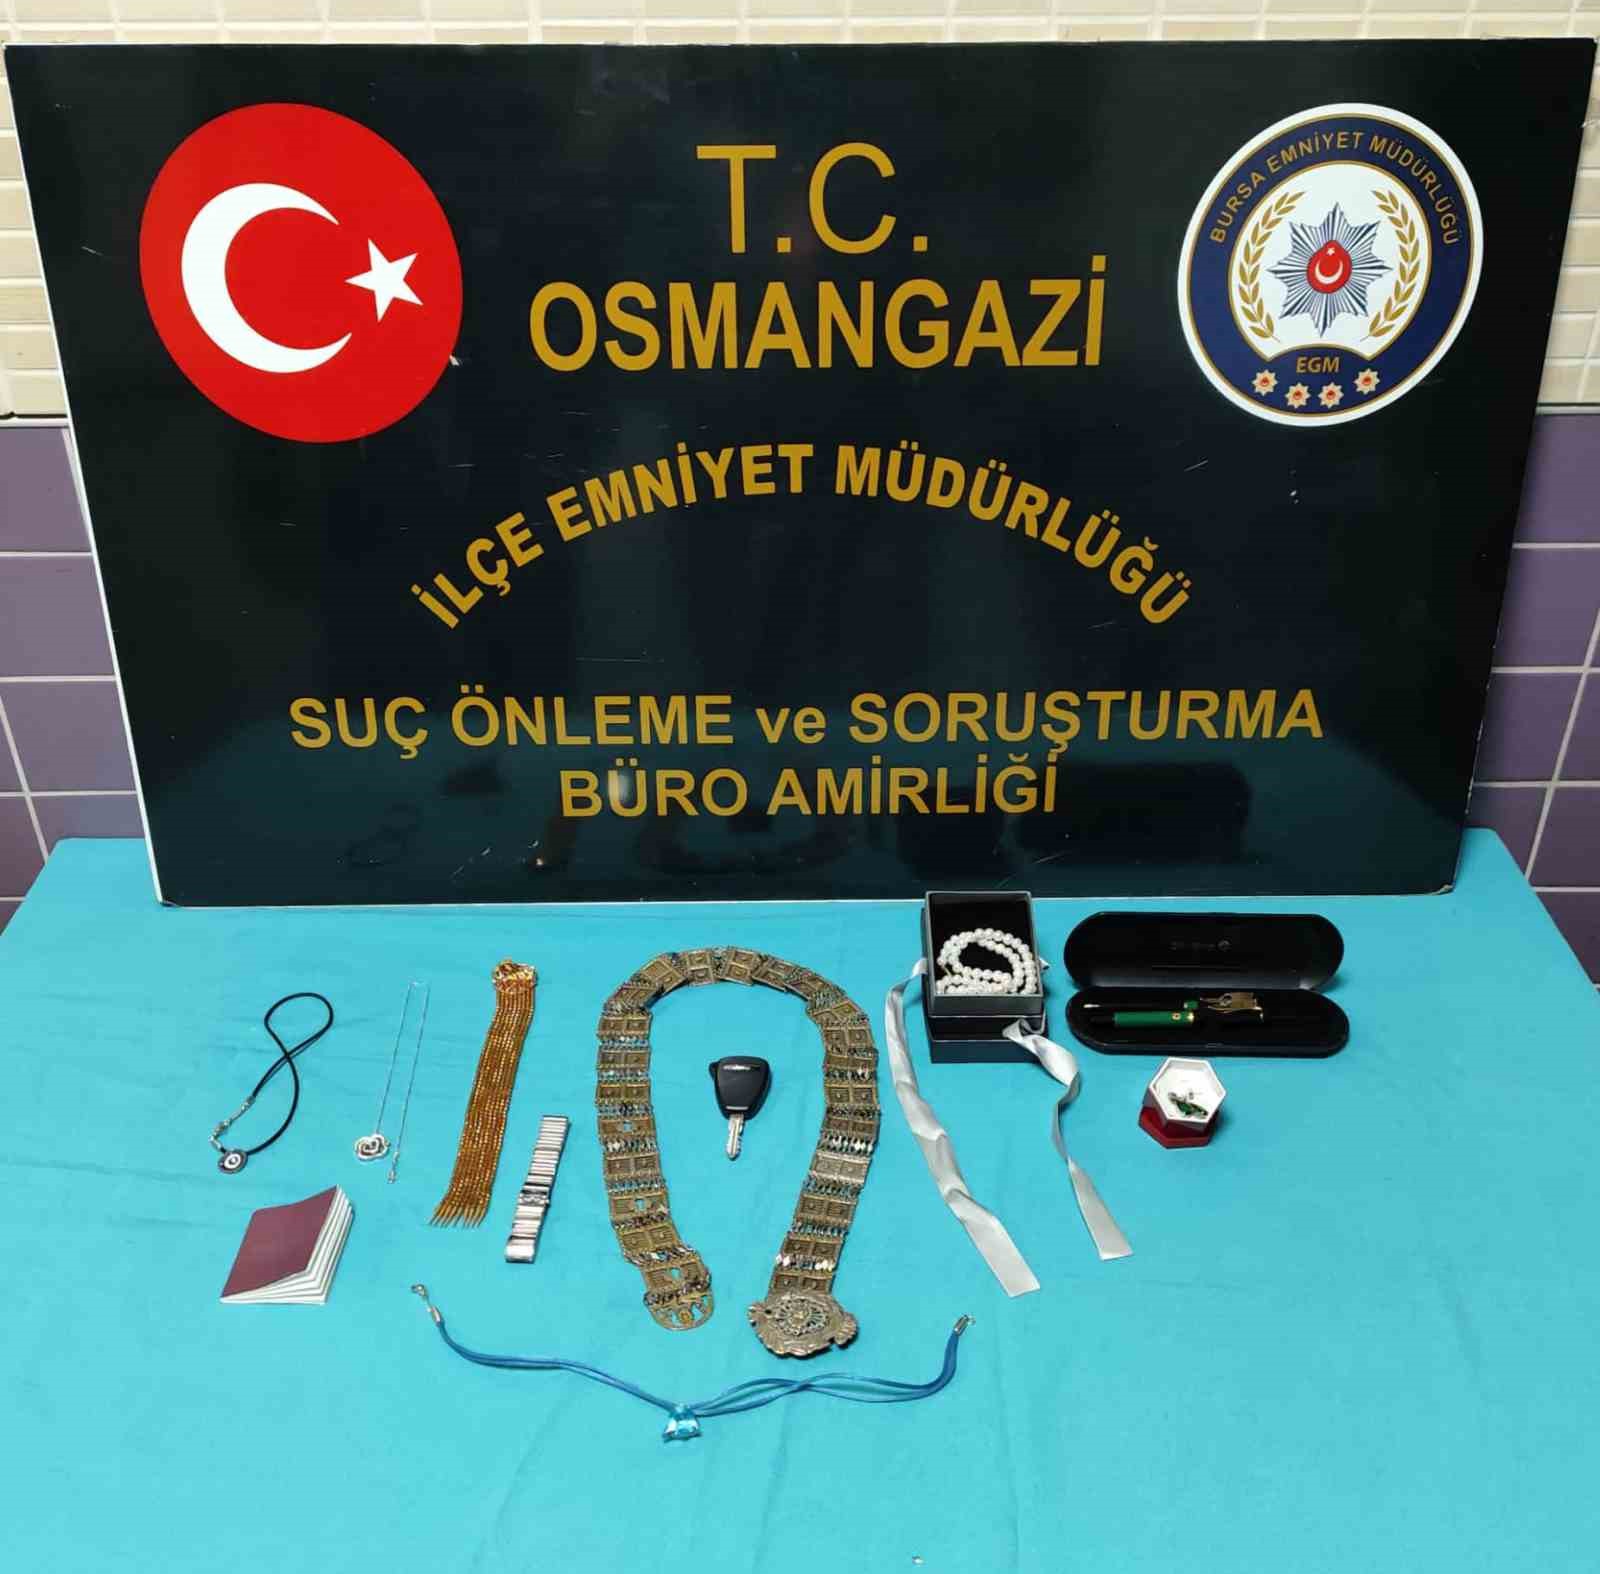 Bursa’da villadan 5 milyonluk vurgun yapan hırsız yakalandı